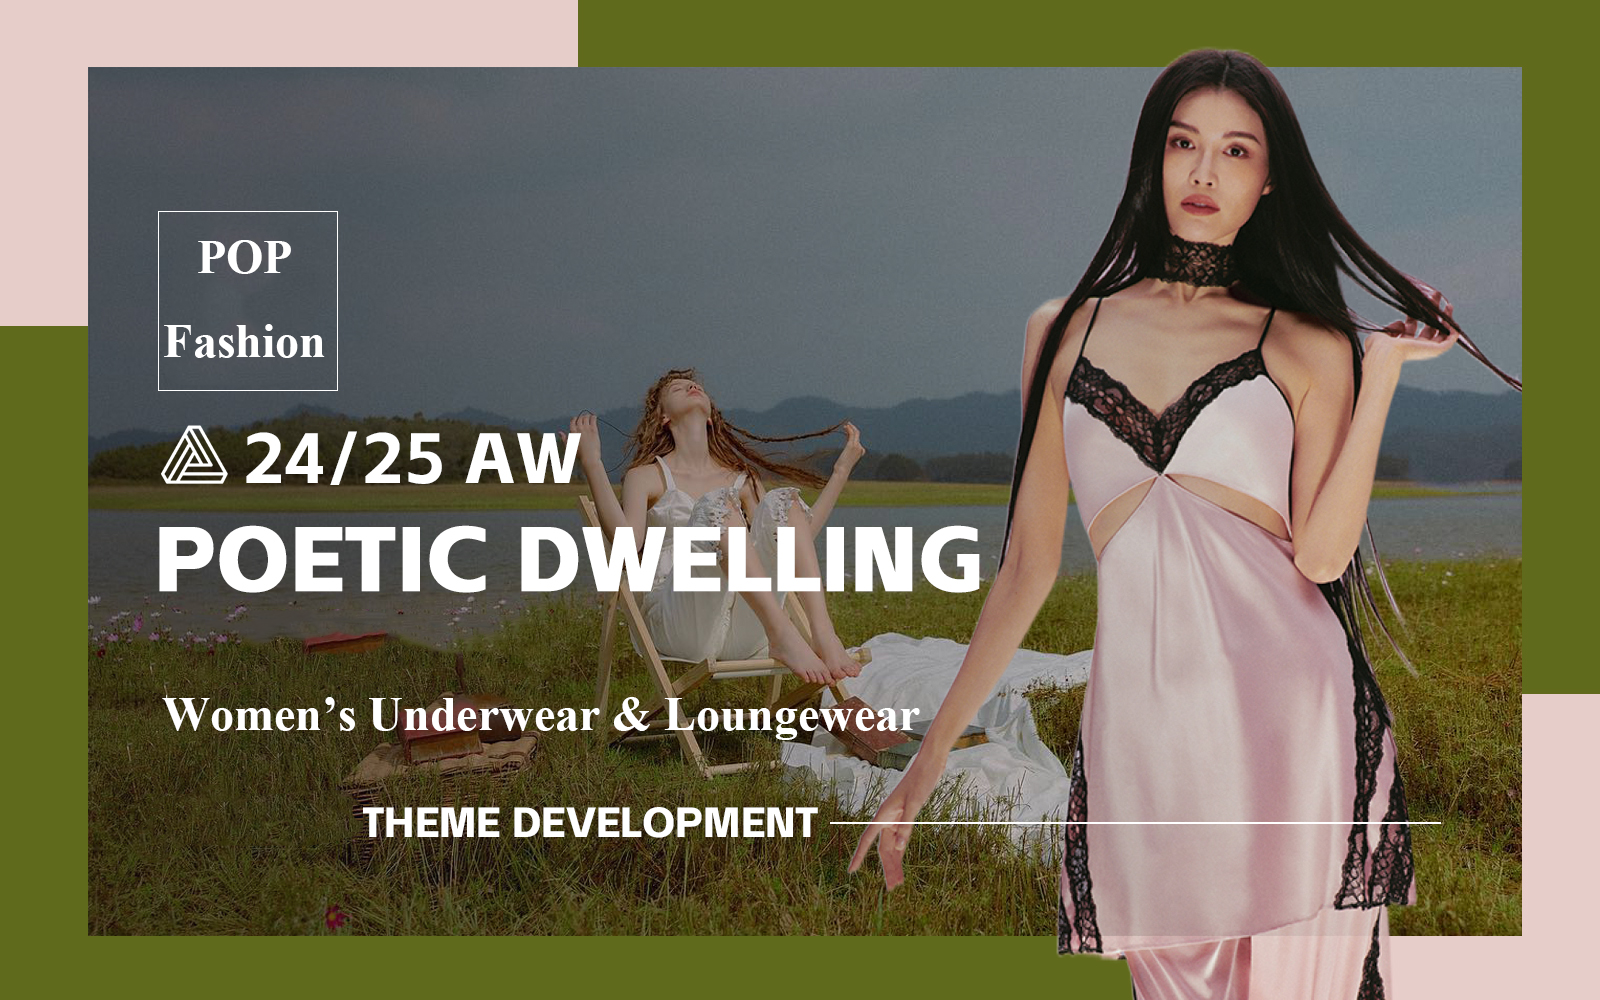 Poetic Dwelling -- The Design Development of Women's Underwear & Loungewear